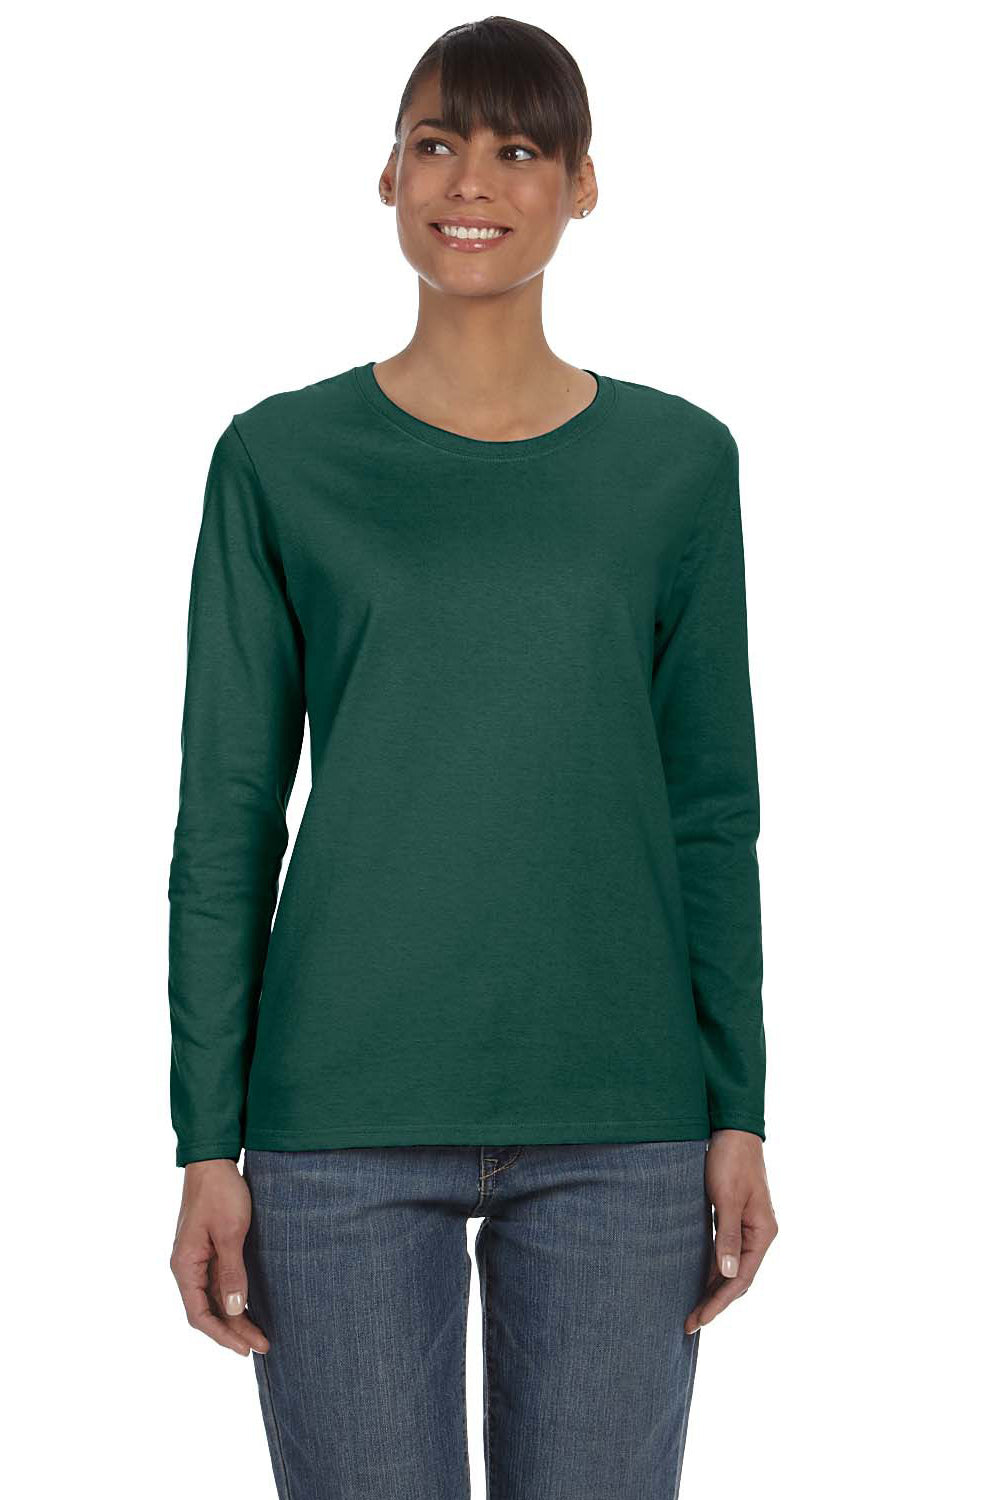 Gildan G540L Womens Long Sleeve Crewneck T-Shirt Forest Green Front